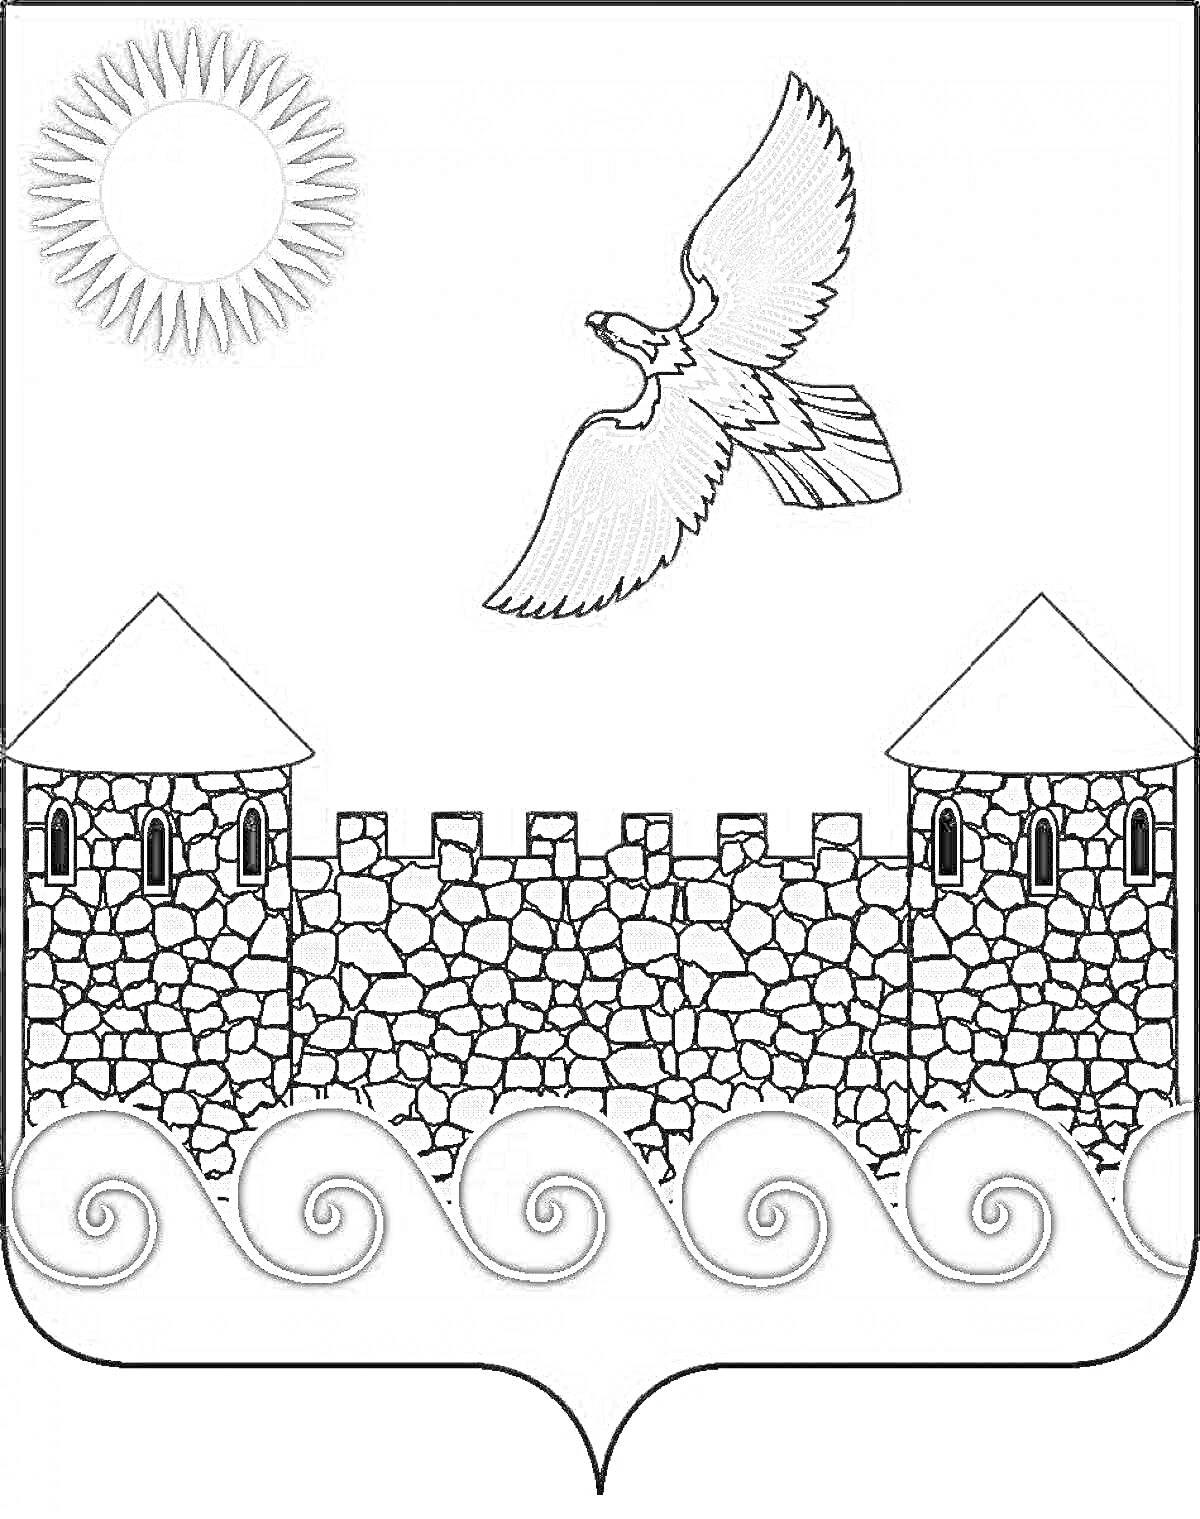 Раскраска герб Ленинградской области с крепостными стенами, башнями, птицей и солнцем